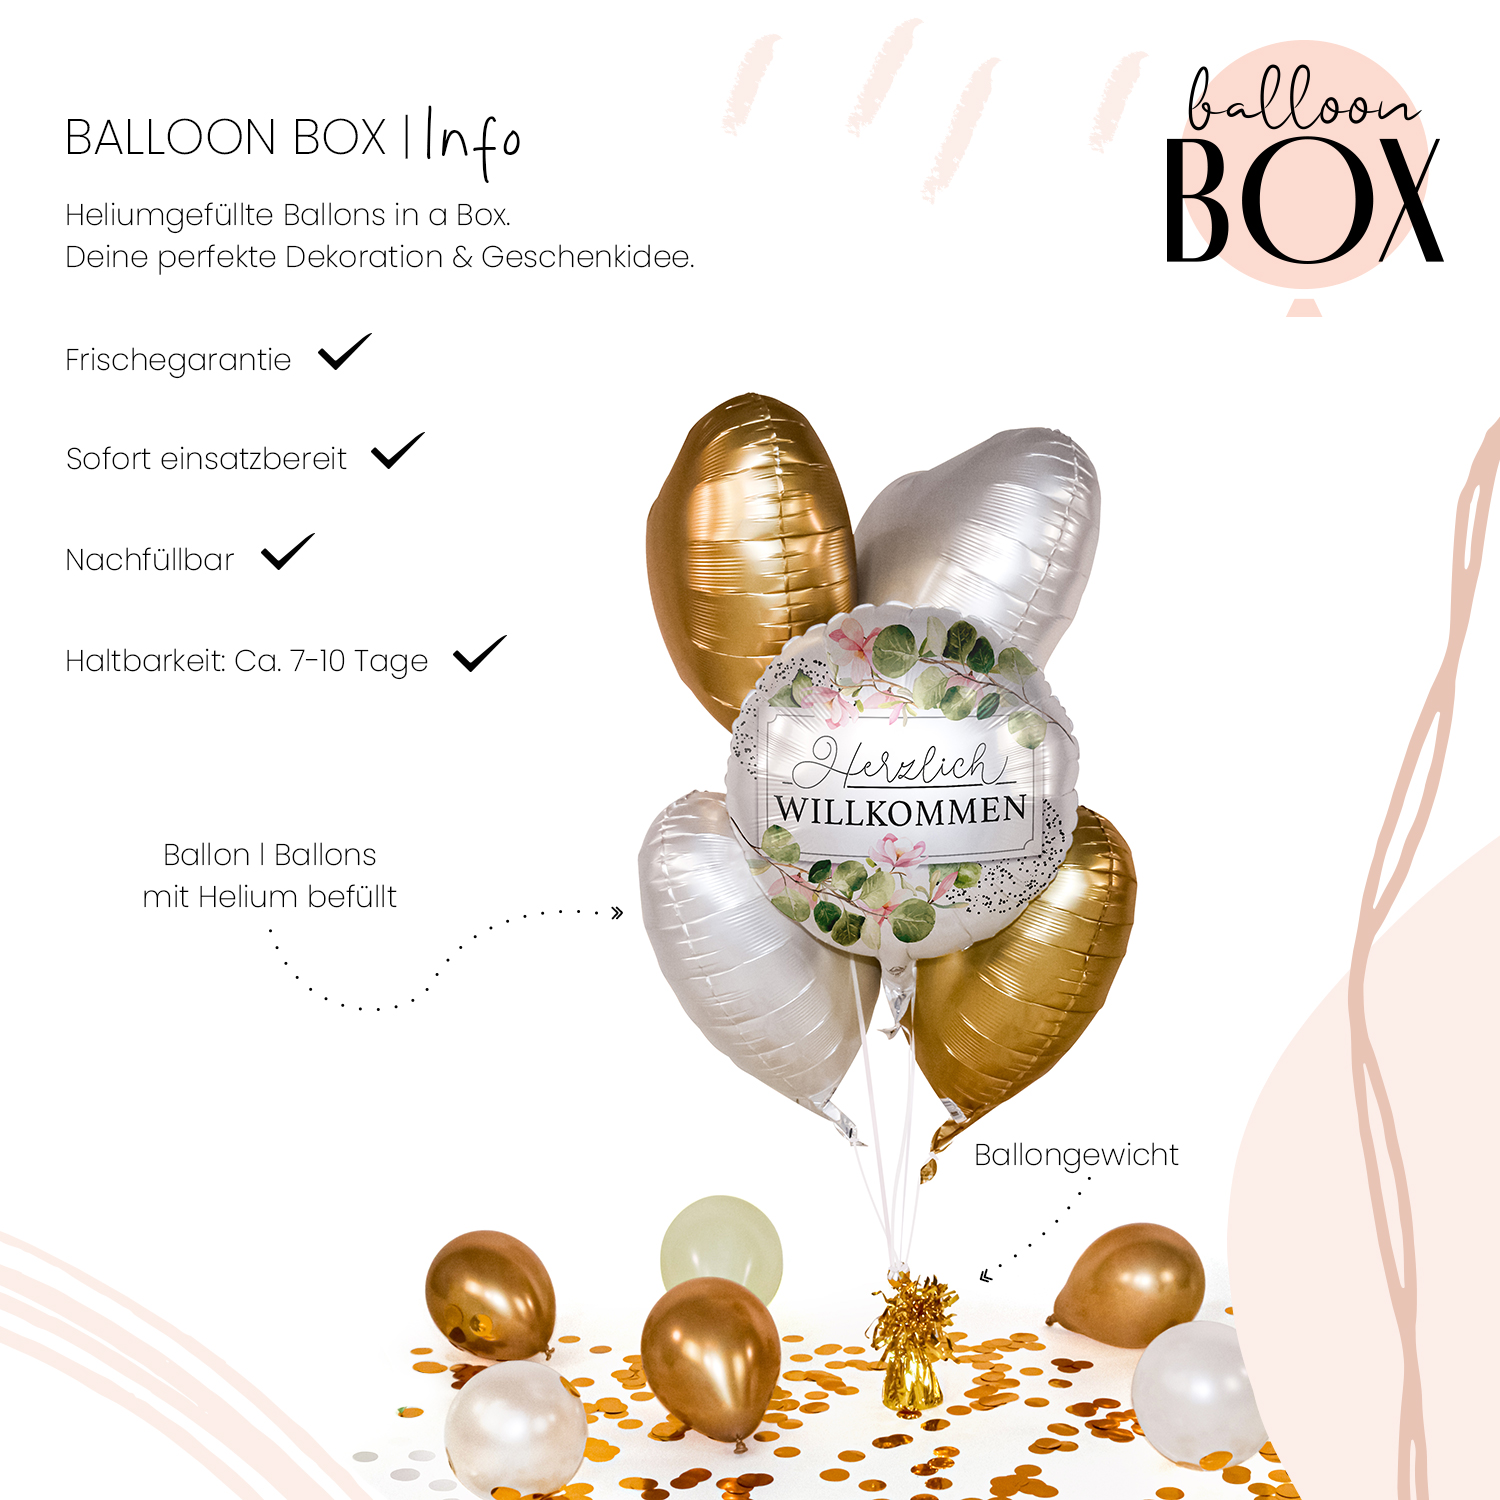 Heliumballon in a Box - Herzlich Willkommen Greenery